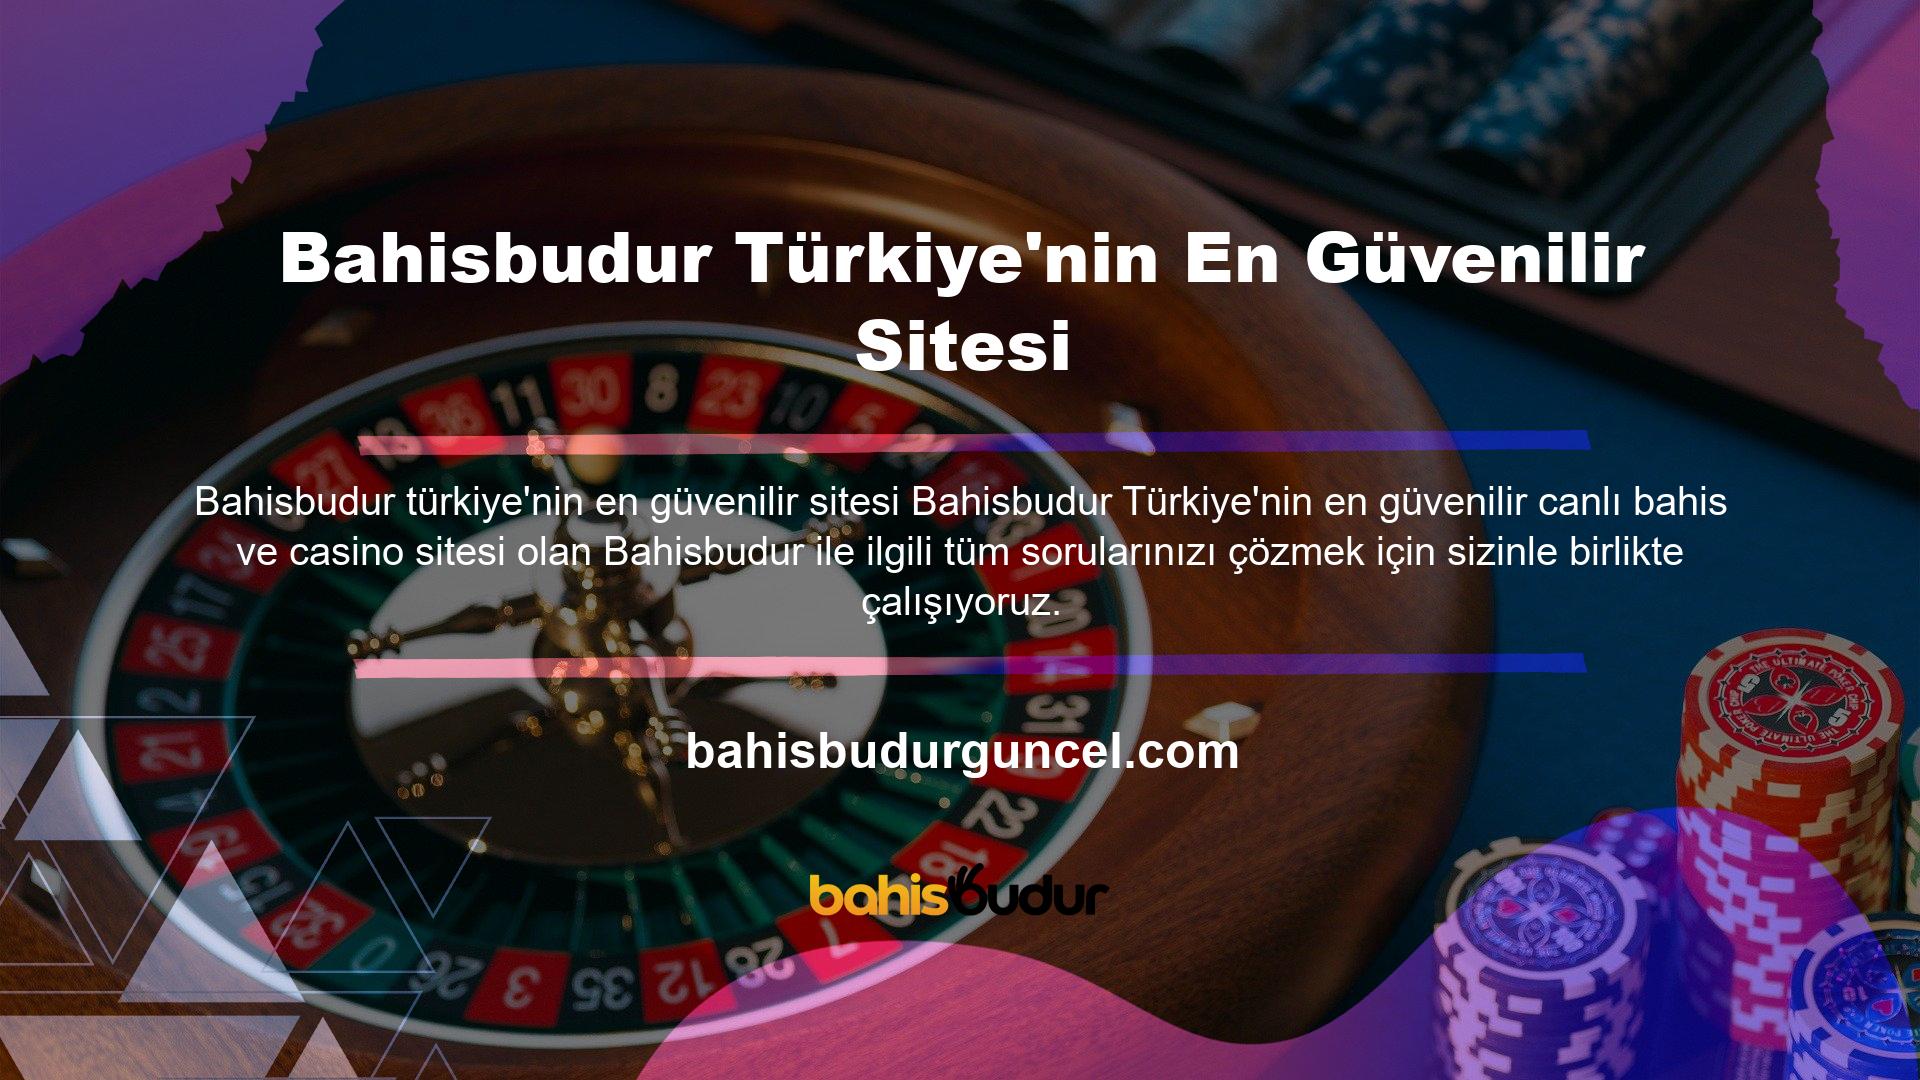 Bahisbudur Türkiye'nin En Güvenilir Sitesi